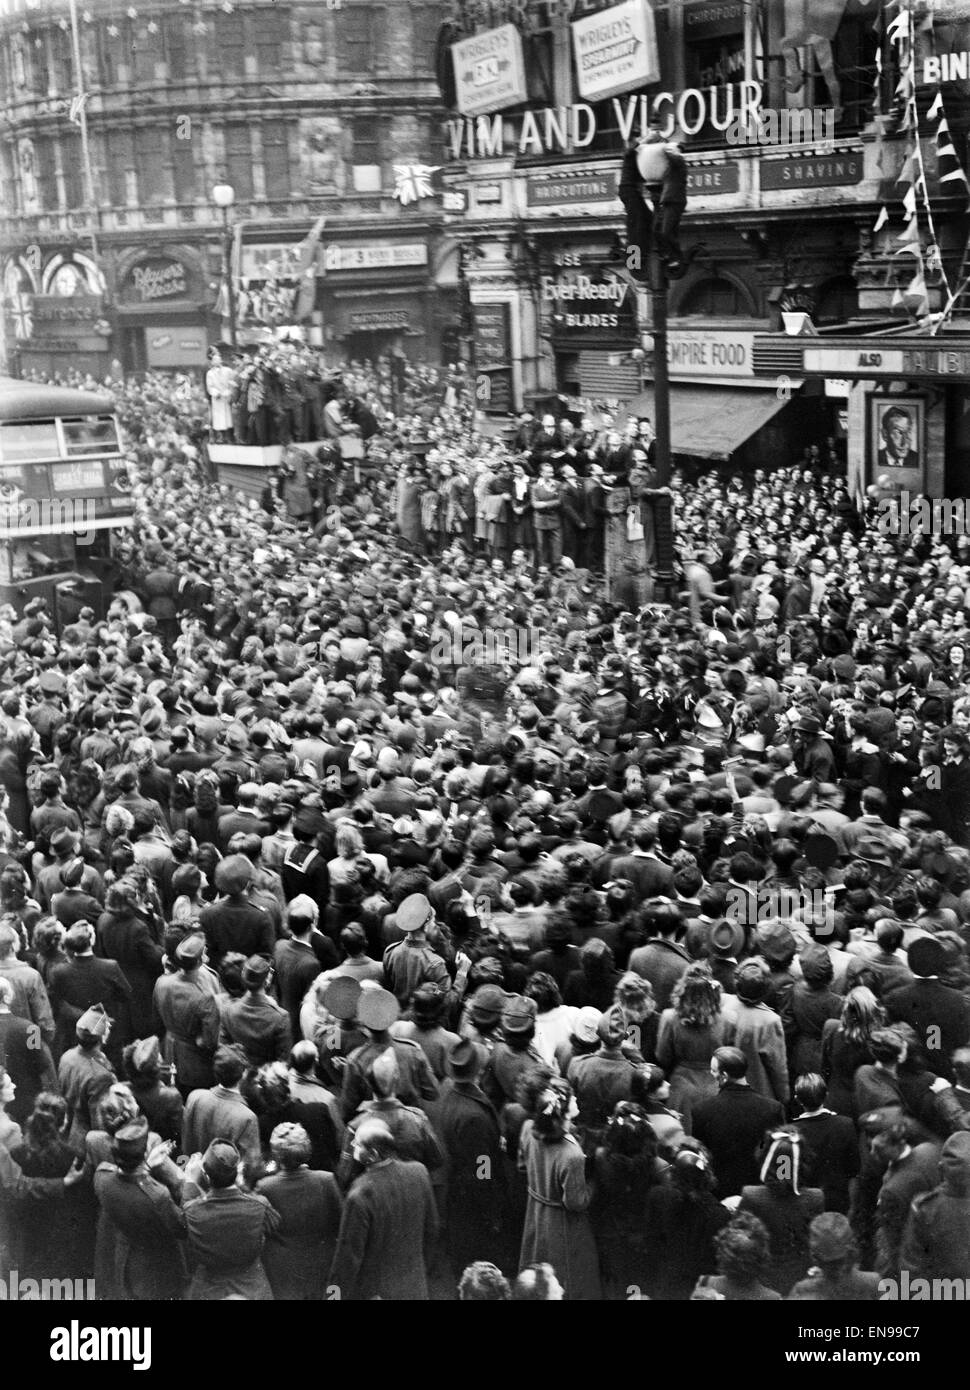 VE Day Feierlichkeiten in London am Ende des zweiten Weltkriegs. Riesige Menschenmengen versammelten sich um Piccadilly Circus während der Feierlichkeiten. 8. Mai 1945. Stockfoto